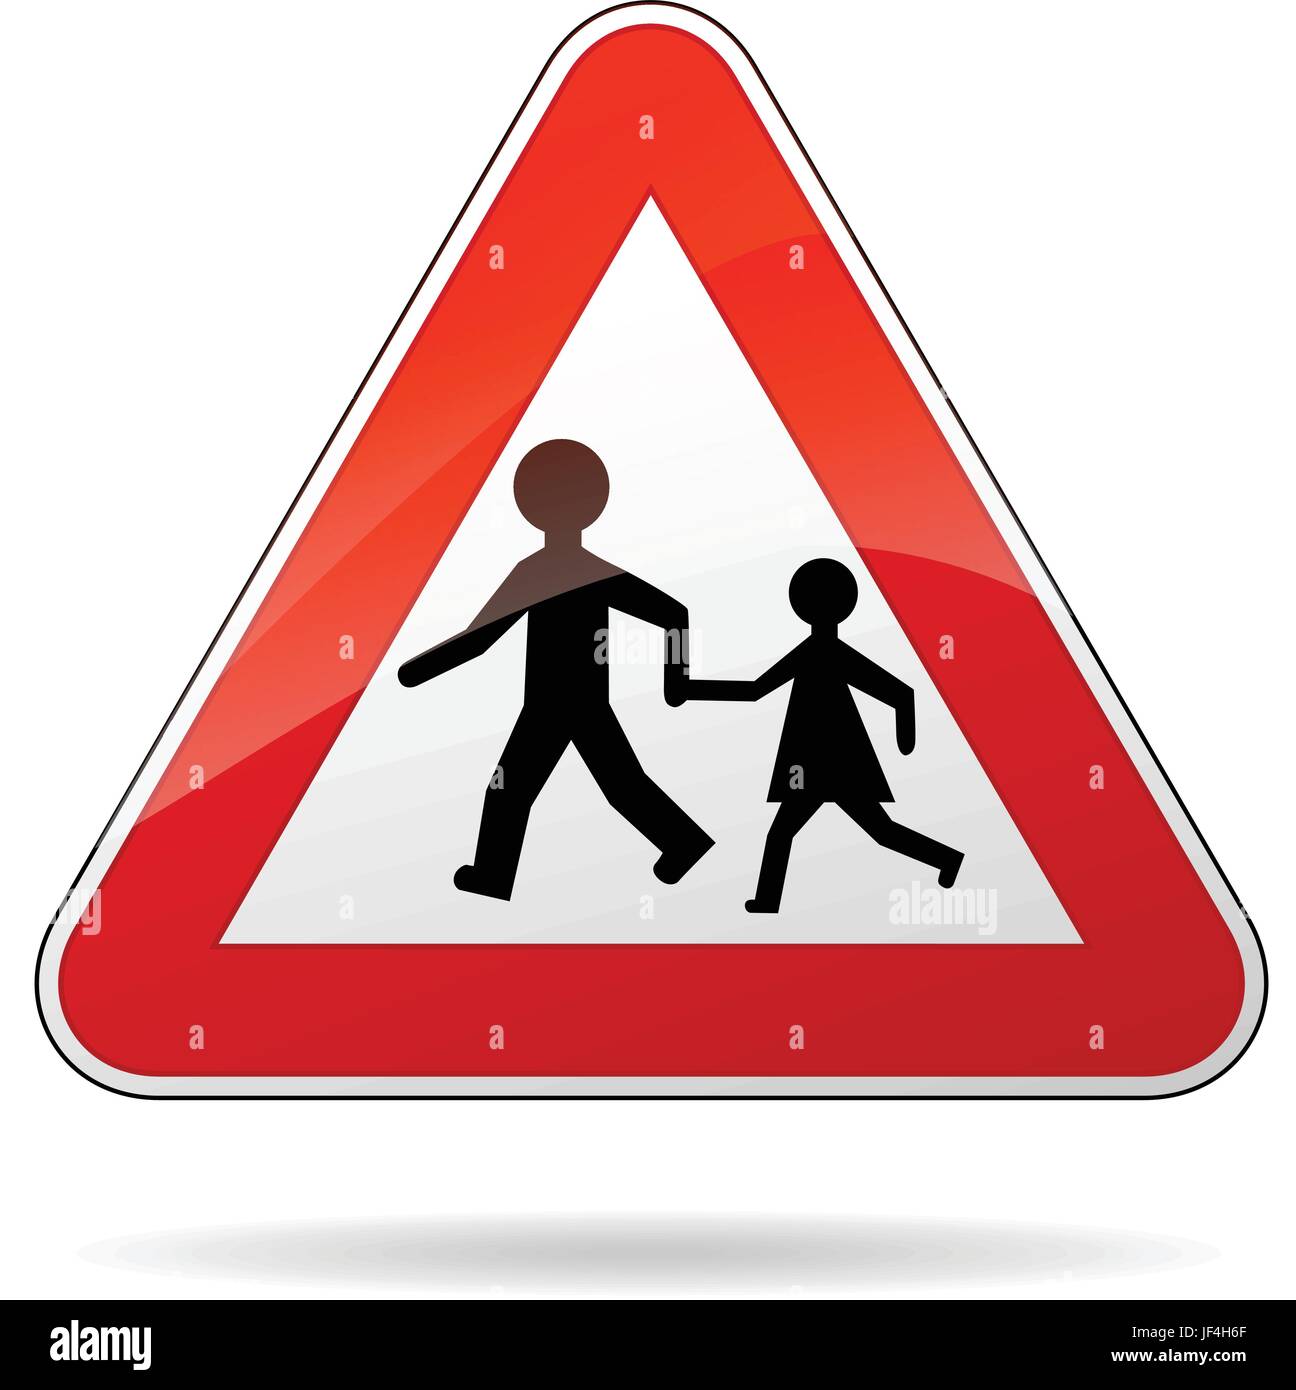 Знак бегущие дети в треугольнике. Треугольные дорожные знаки. Знак «дети». Дорожный знак с двумя человечками. Треугольные дорожные знаки для детей.